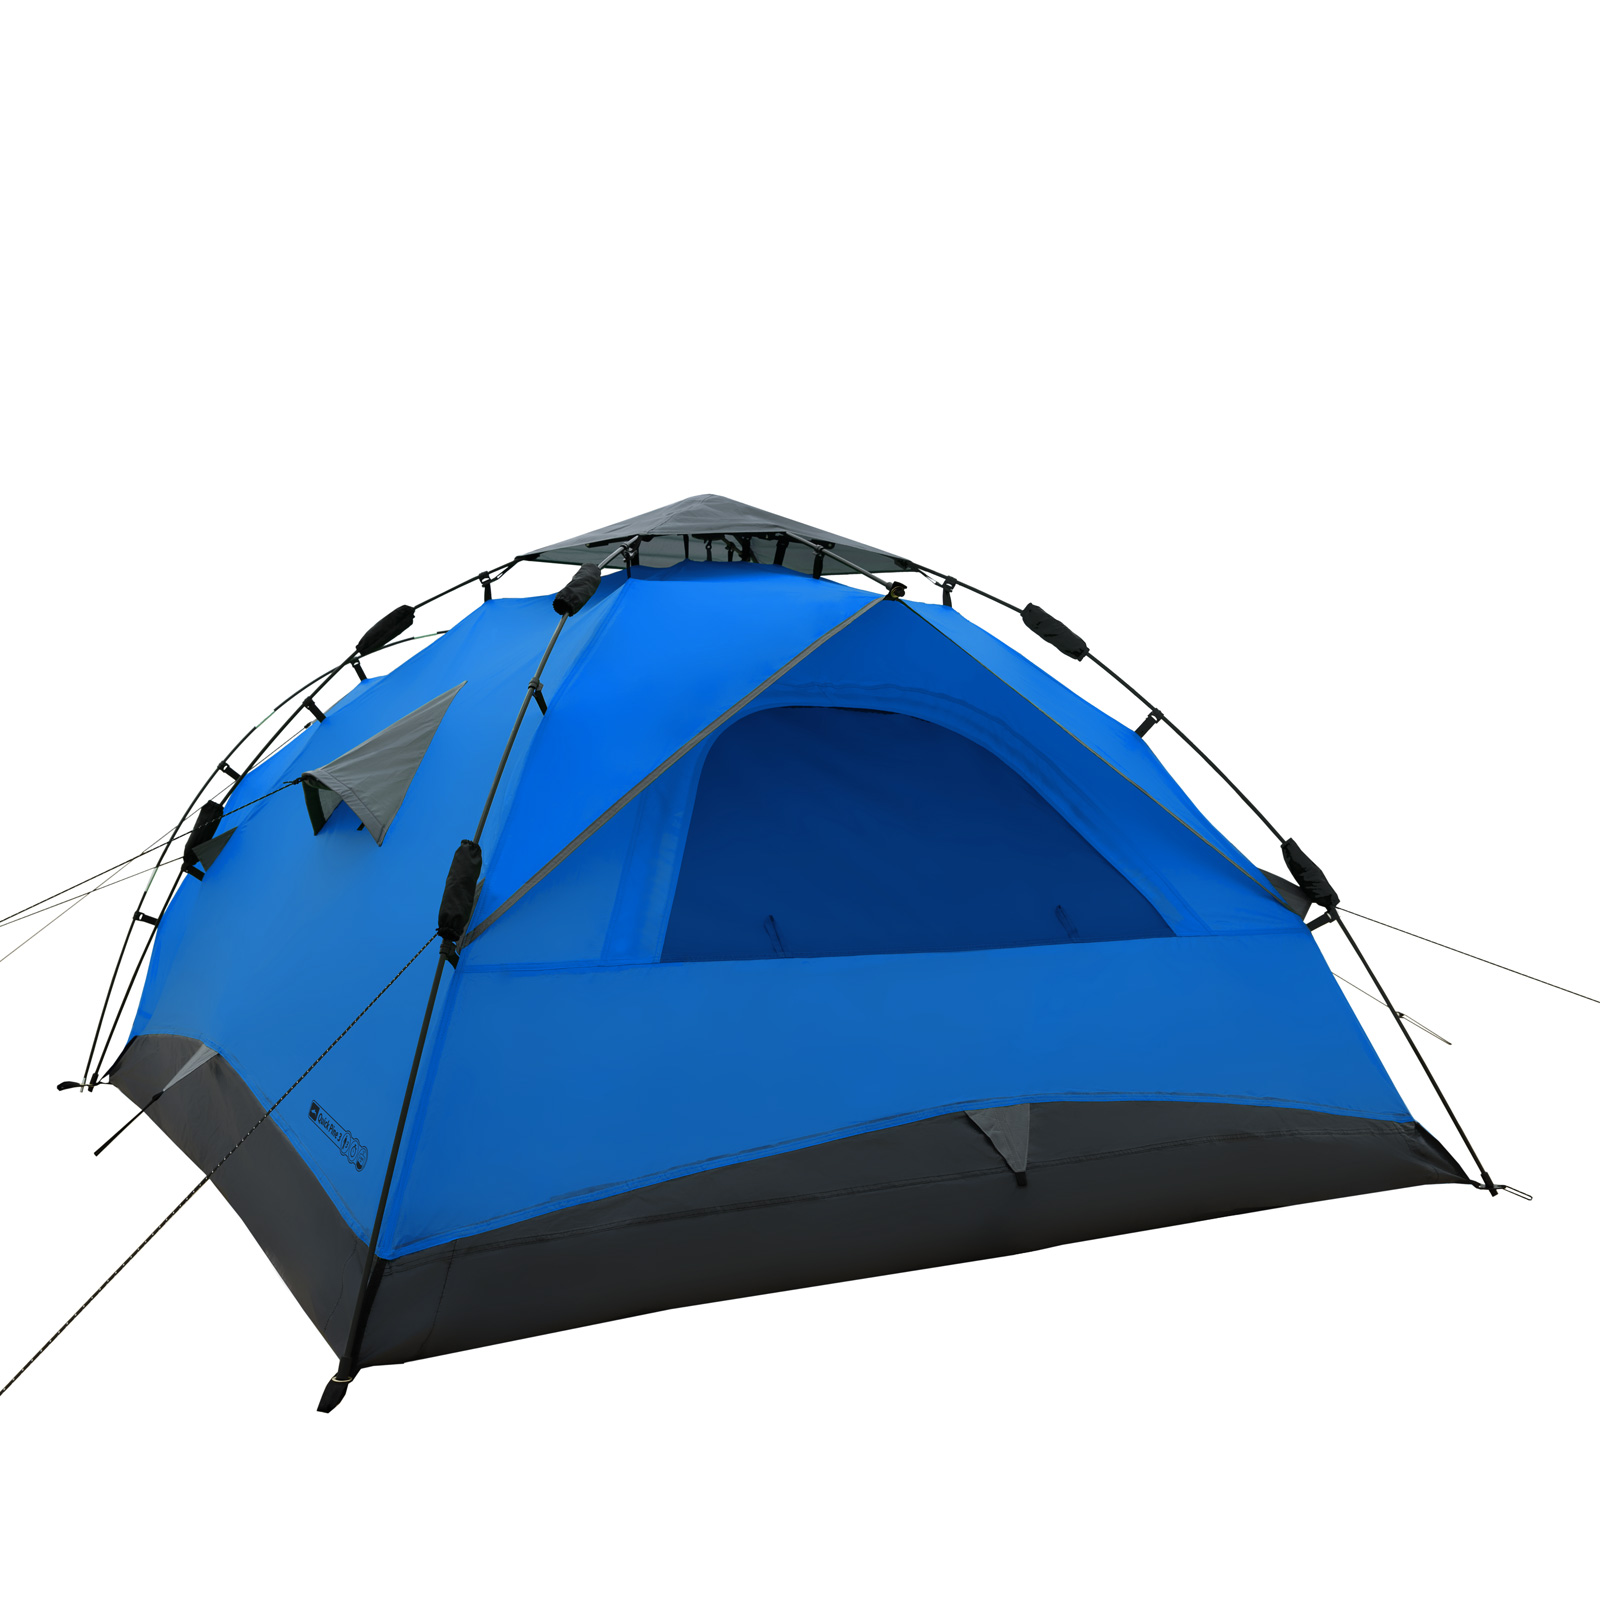 Sekundenzelt QEEDO Quick Pine 3 Personen Zelt Campingzelt Pop Up Zelt Wurfzelt